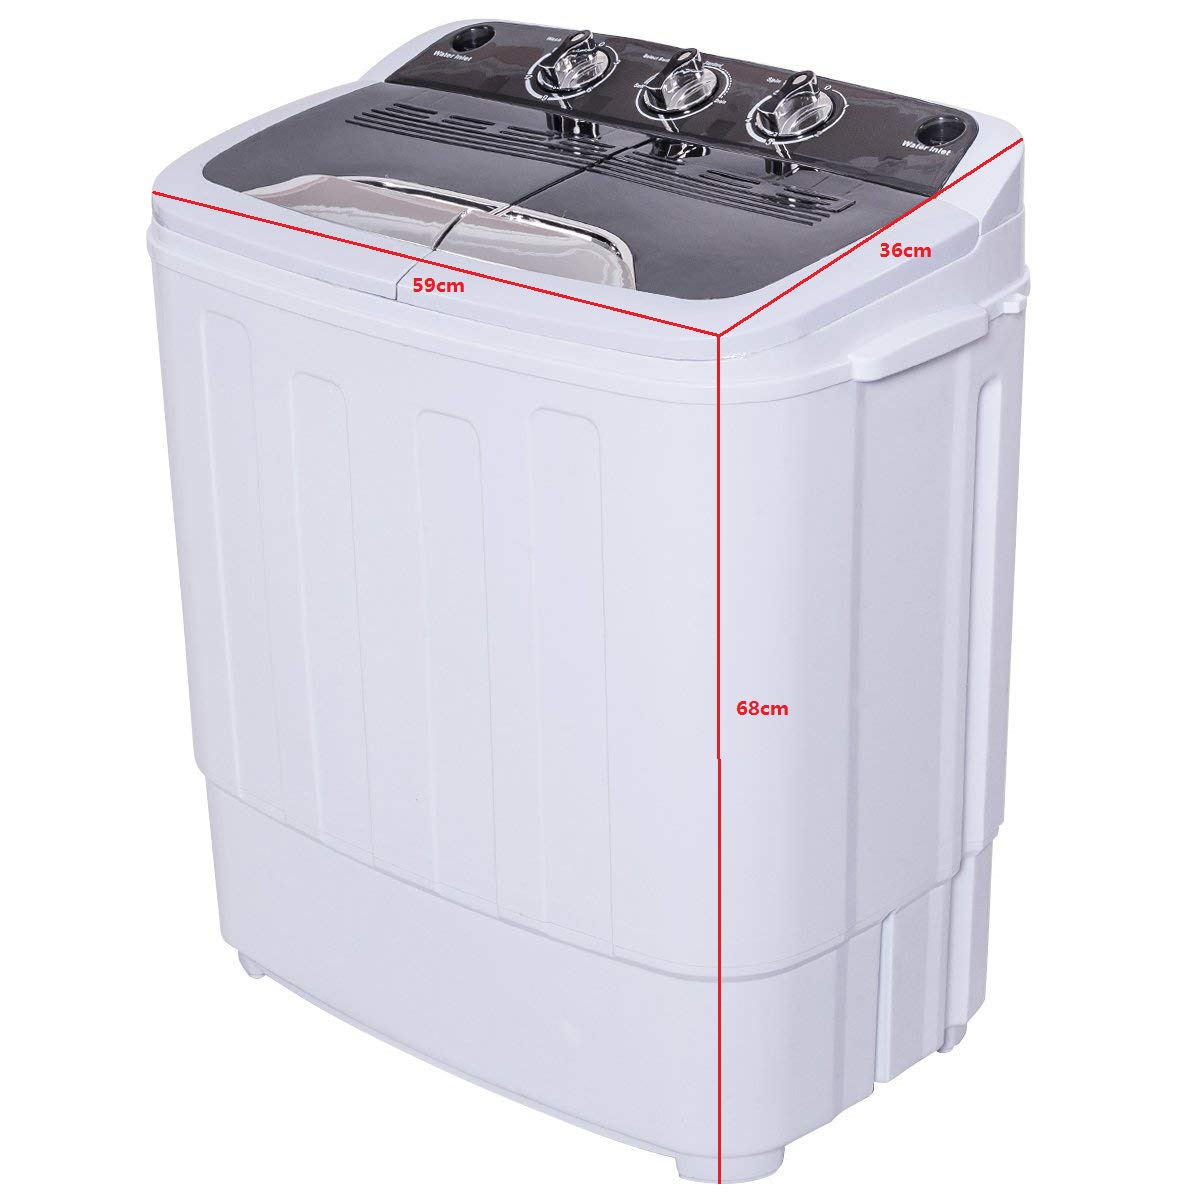 Mini lavatrice con centrifuga a 2 programmi Semi-automatici